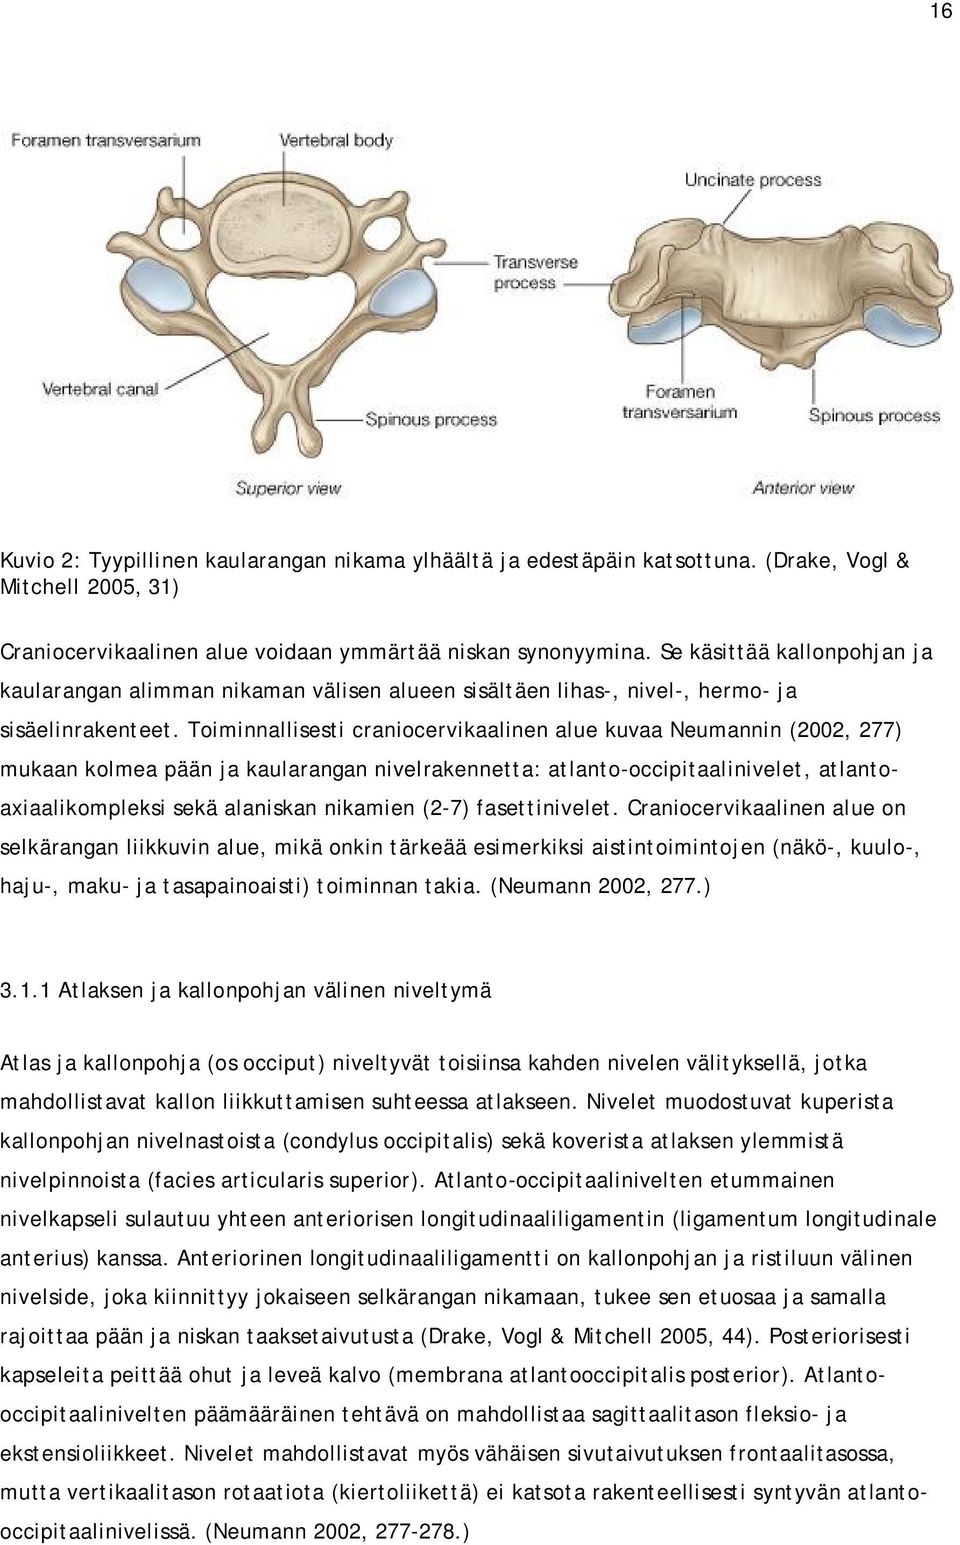 Toiminnallisesti craniocervikaalinen alue kuvaa Neumannin (2002, 277) mukaan kolmea pään ja kaularangan nivelrakennetta: atlanto-occipitaalinivelet, atlantoaxiaalikompleksi sekä alaniskan nikamien